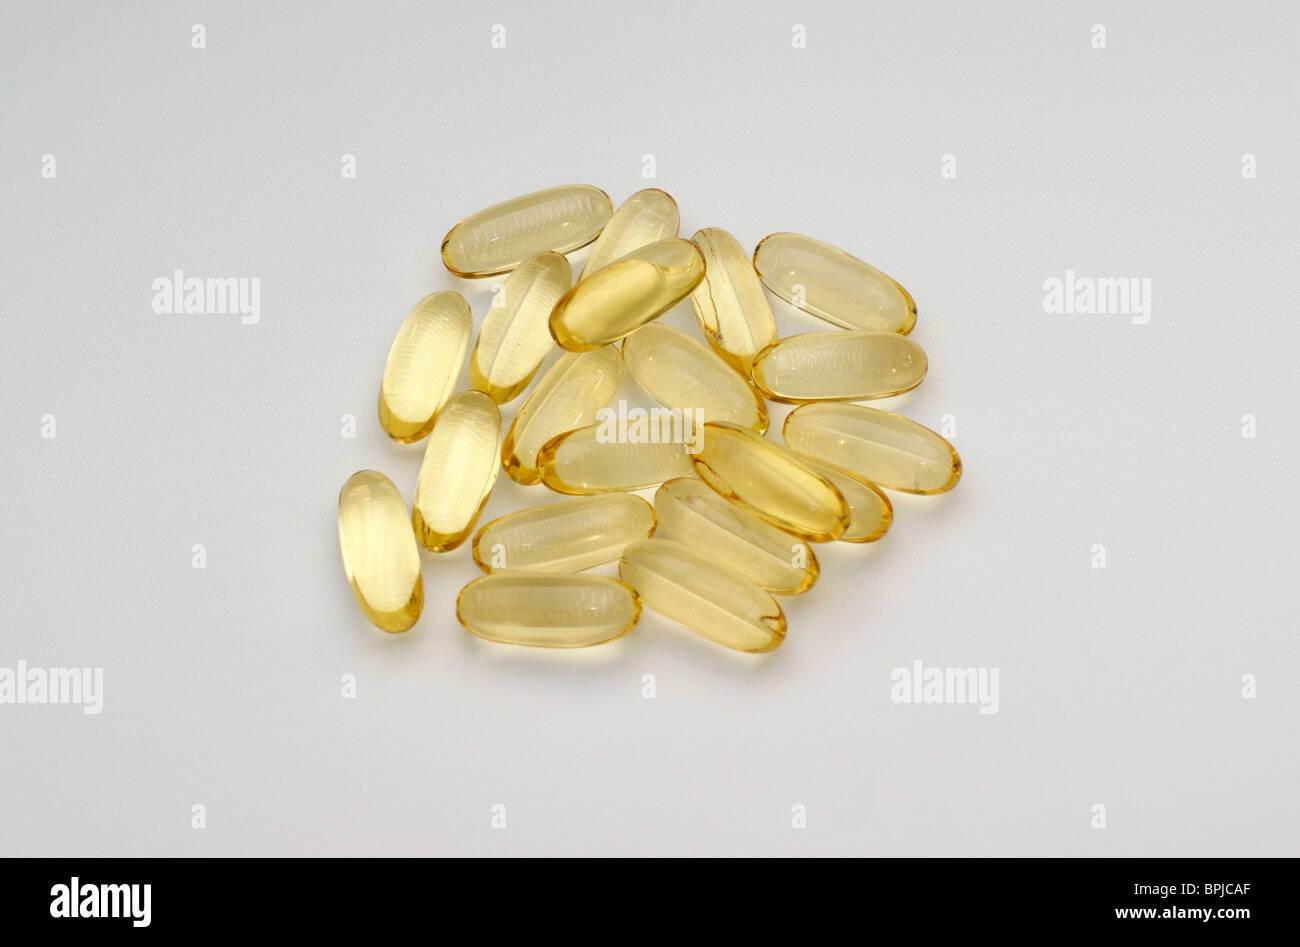 Omega 3 Fischöl Tabletten für niedrige Cholesterinspiegel im Herzen  Gesundheit & eine beruhigende Wirkung auf hyperaktive Kinder von Vorteil  Stockfotografie - Alamy